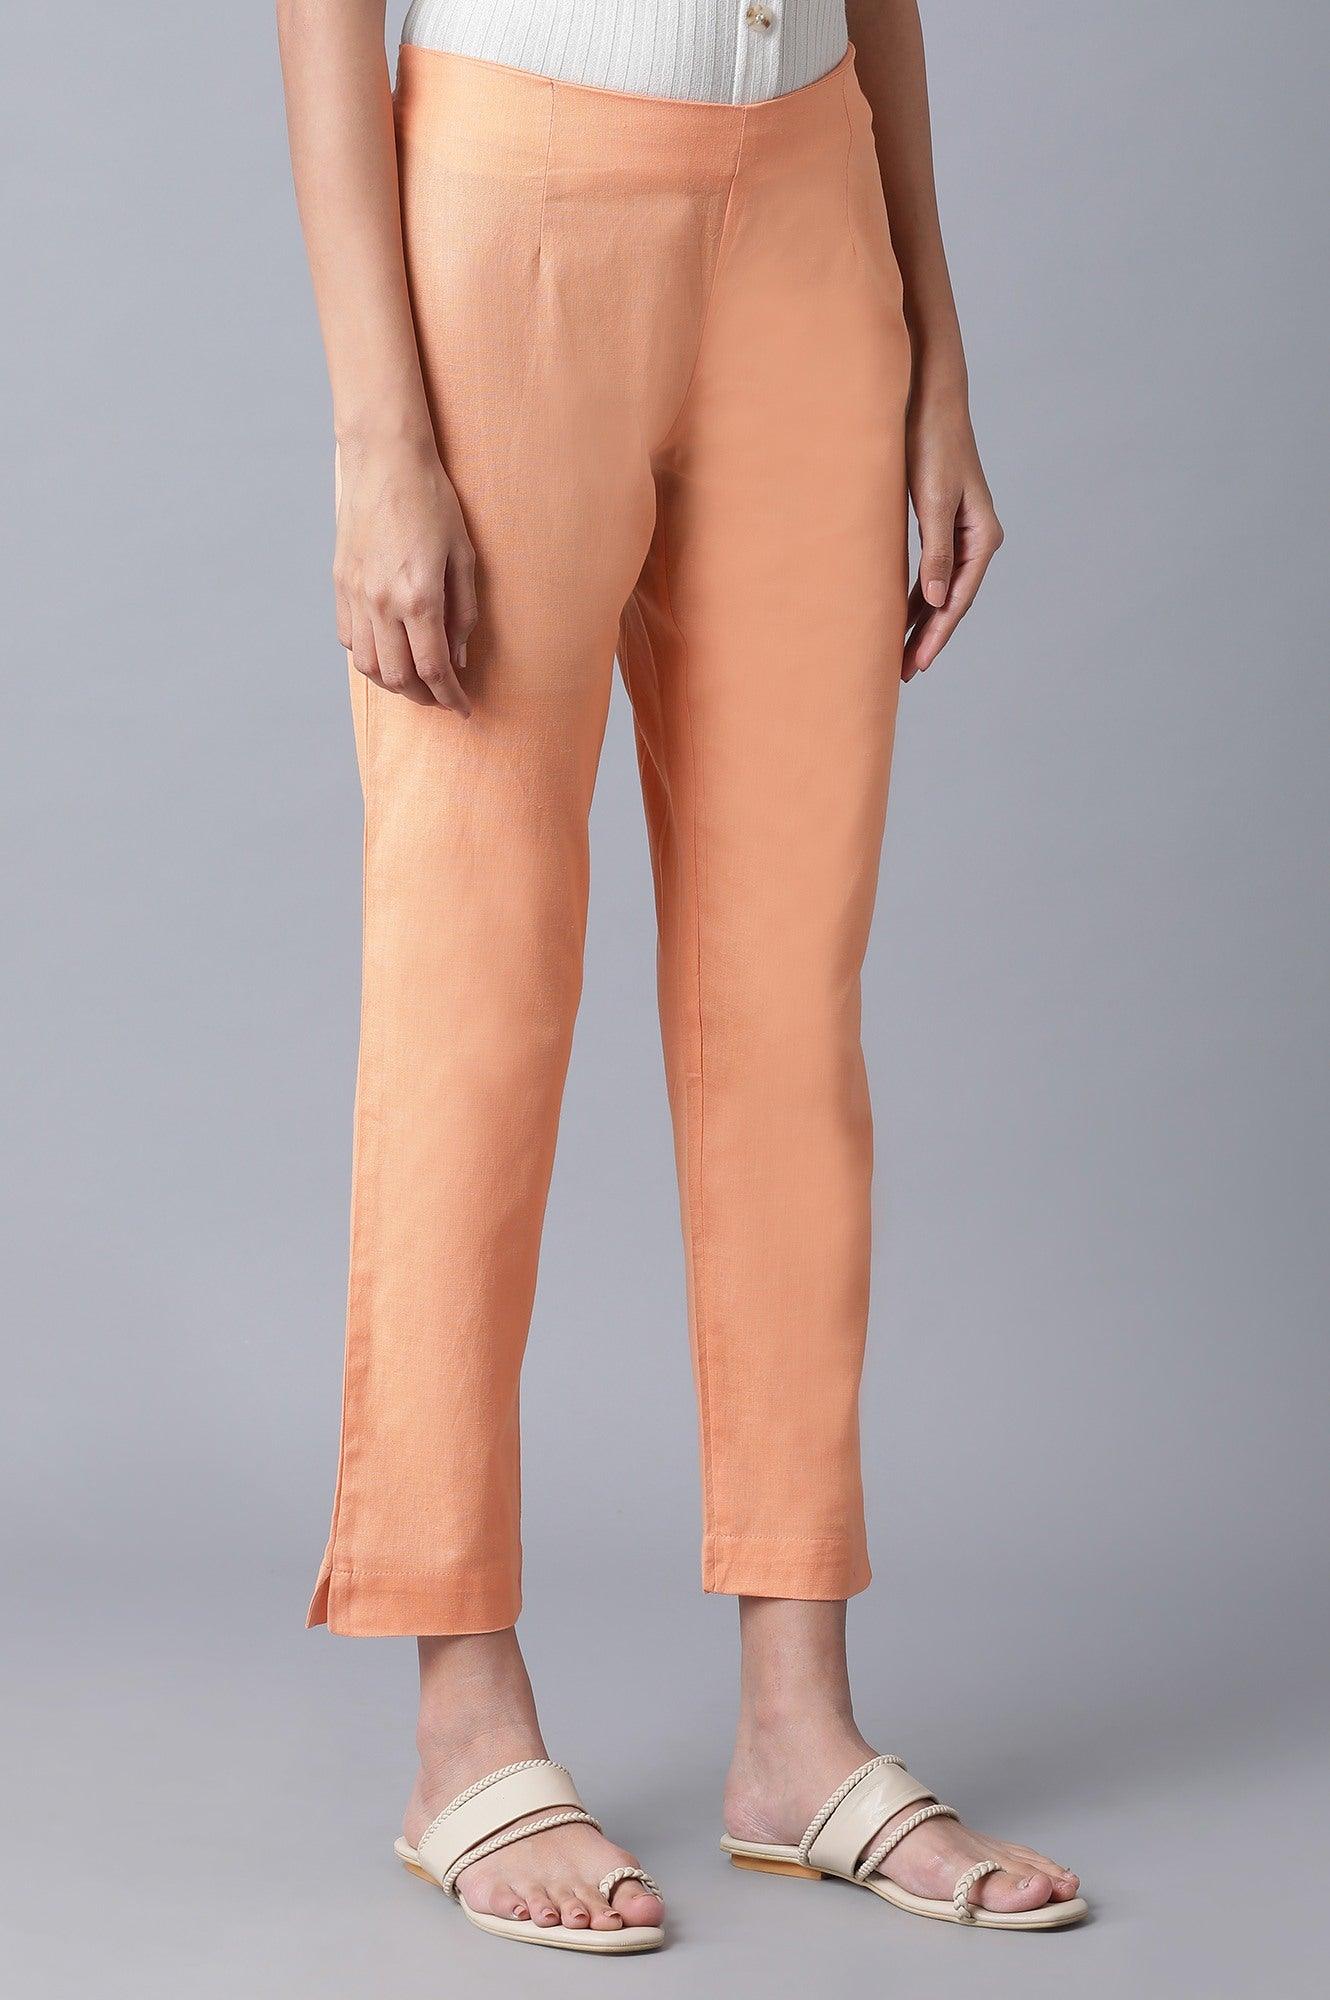 Orange Solid Slim Pants - wforwoman